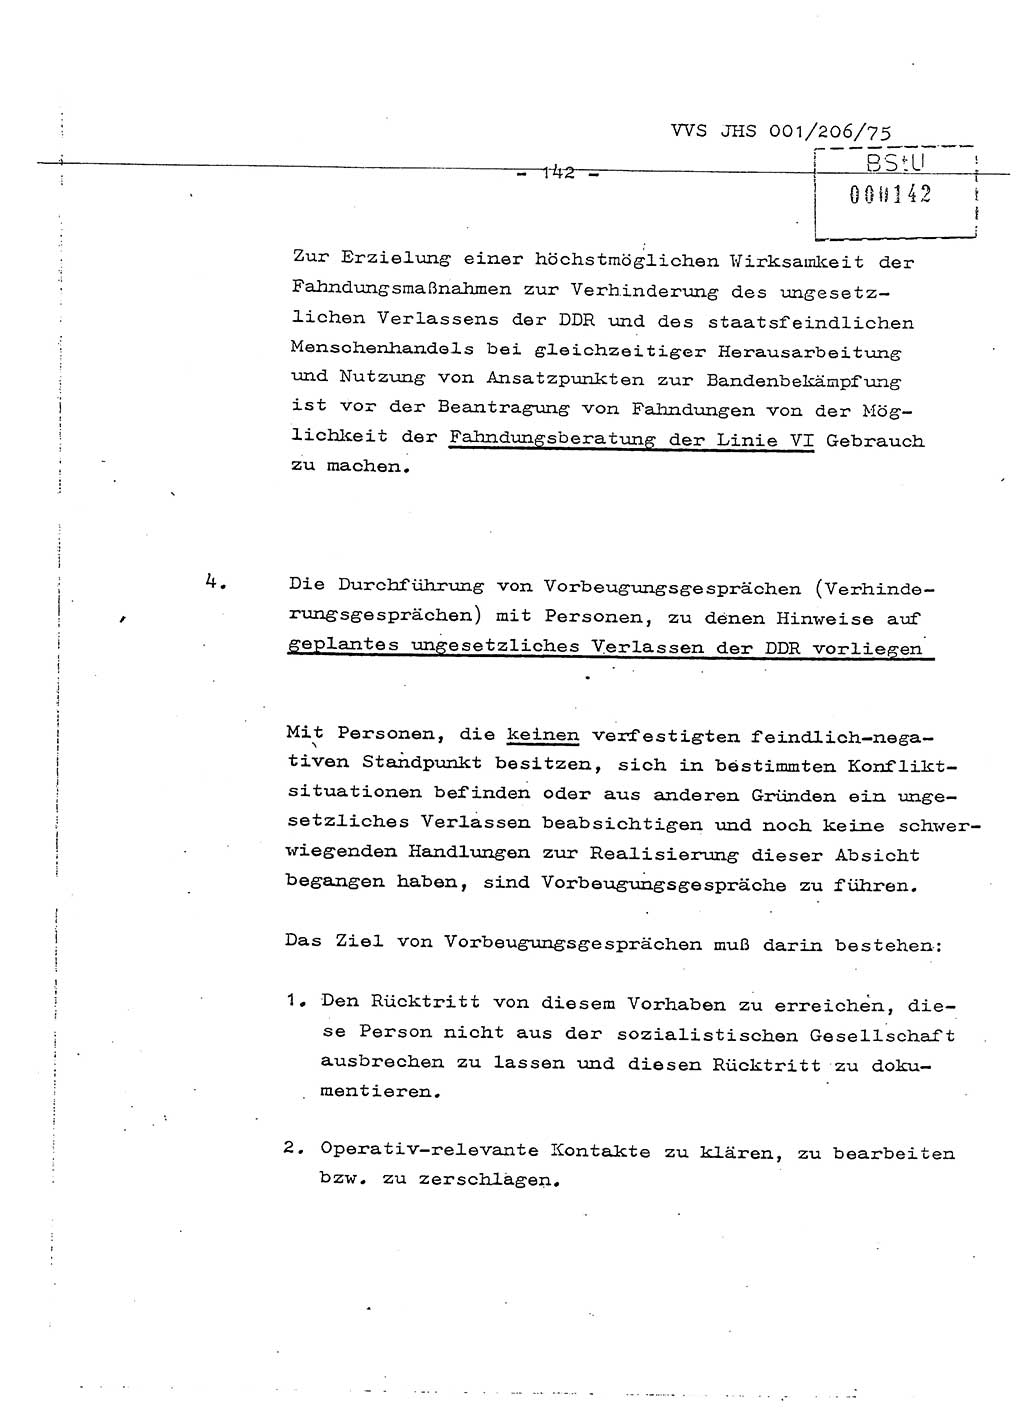 Dissertation Generalmajor Manfred Hummitzsch (Leiter der BV Leipzig), Generalmajor Heinz Fiedler (HA Ⅵ), Oberst Rolf Fister (HA Ⅸ), Ministerium für Staatssicherheit (MfS) [Deutsche Demokratische Republik (DDR)], Juristische Hochschule (JHS), Vertrauliche Verschlußsache (VVS) 001-206/75, Potsdam 1975, Seite 142 (Diss. MfS DDR JHS VVS 001-206/75 1975, S. 142)